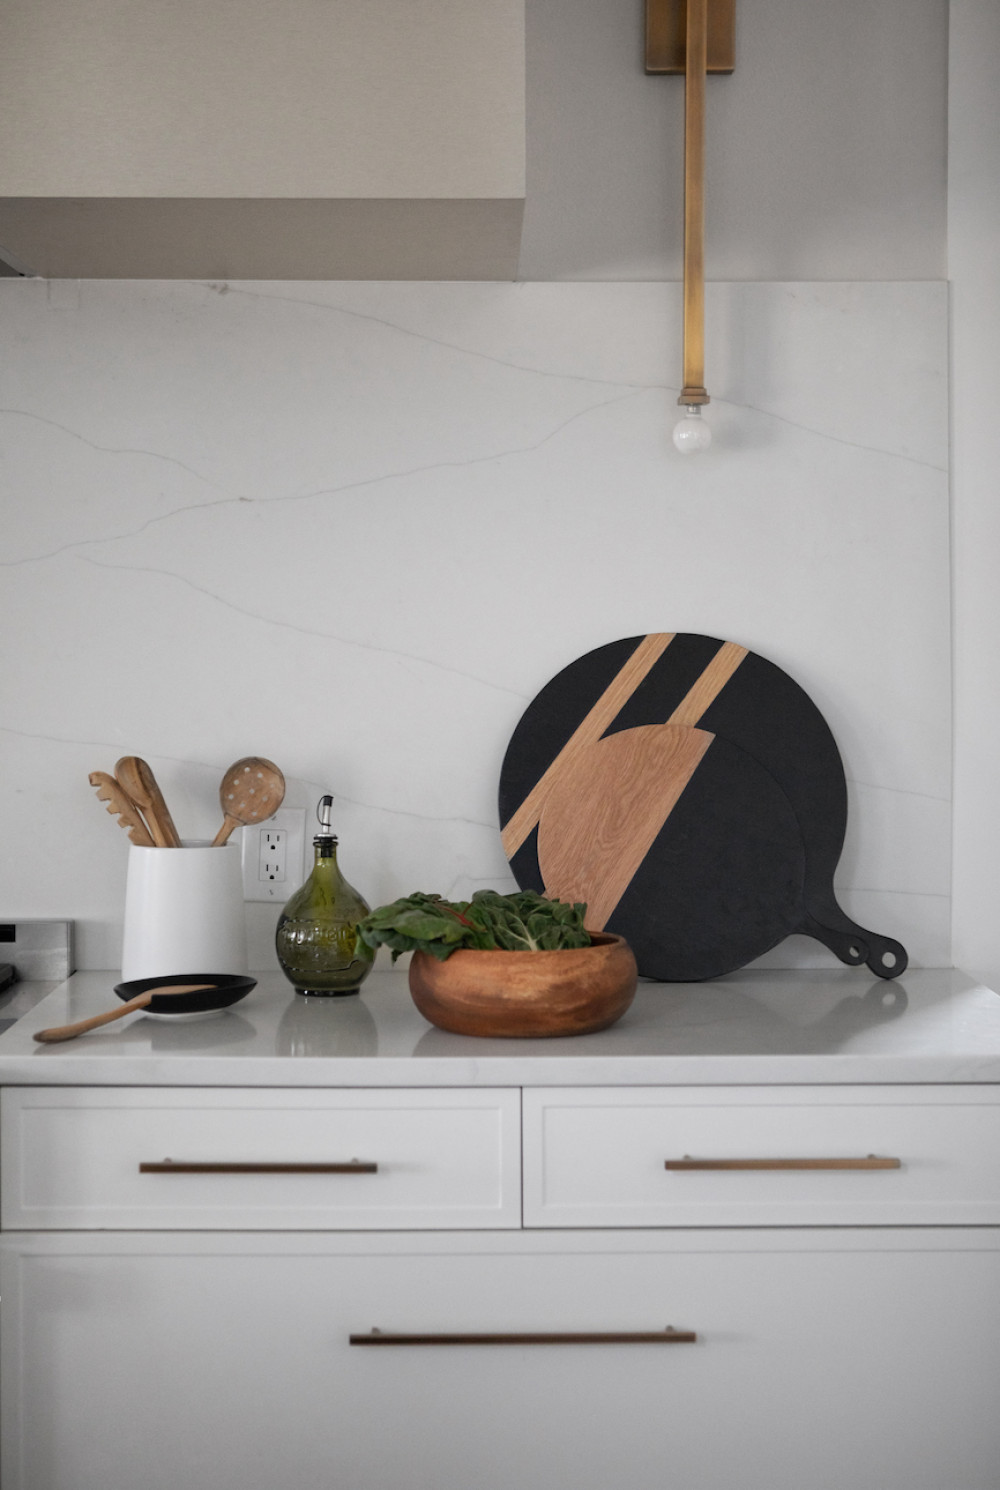 kitchen-interior-design-cutting-boards-wooden-utensils